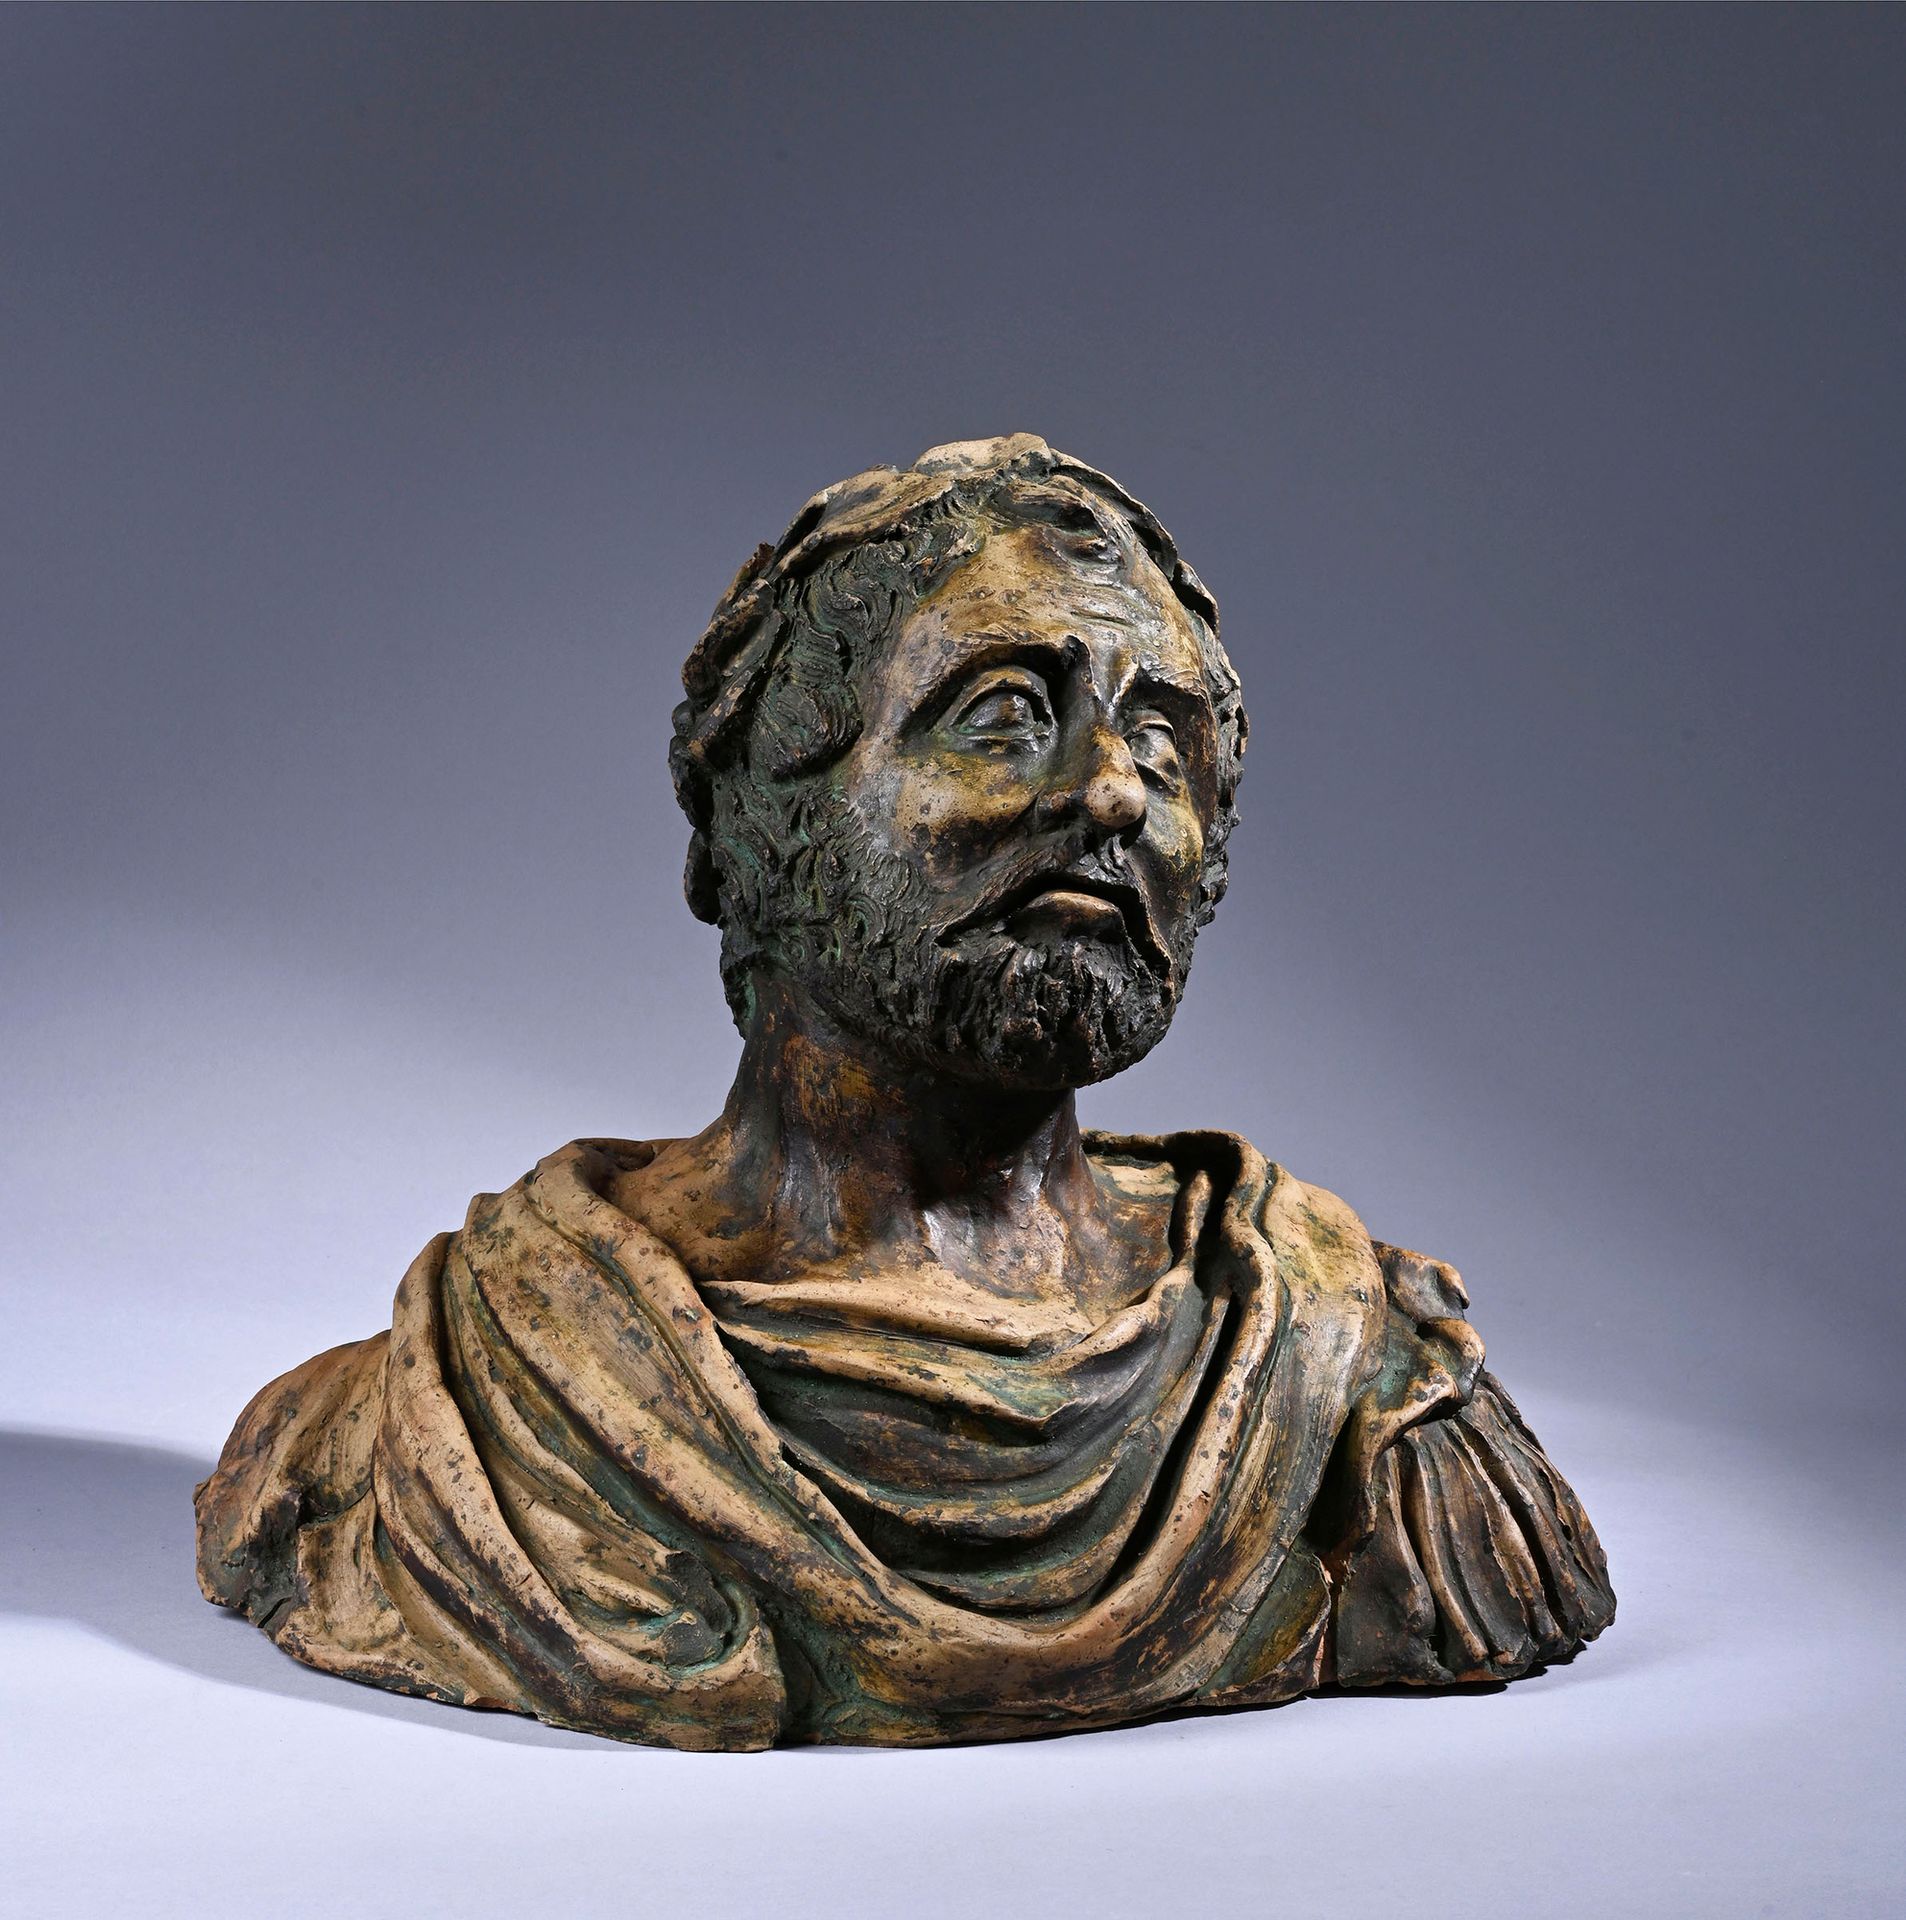 Null 古老的皇帝半身像，带有青铜色光泽。
德国17世纪初
H.30厘米